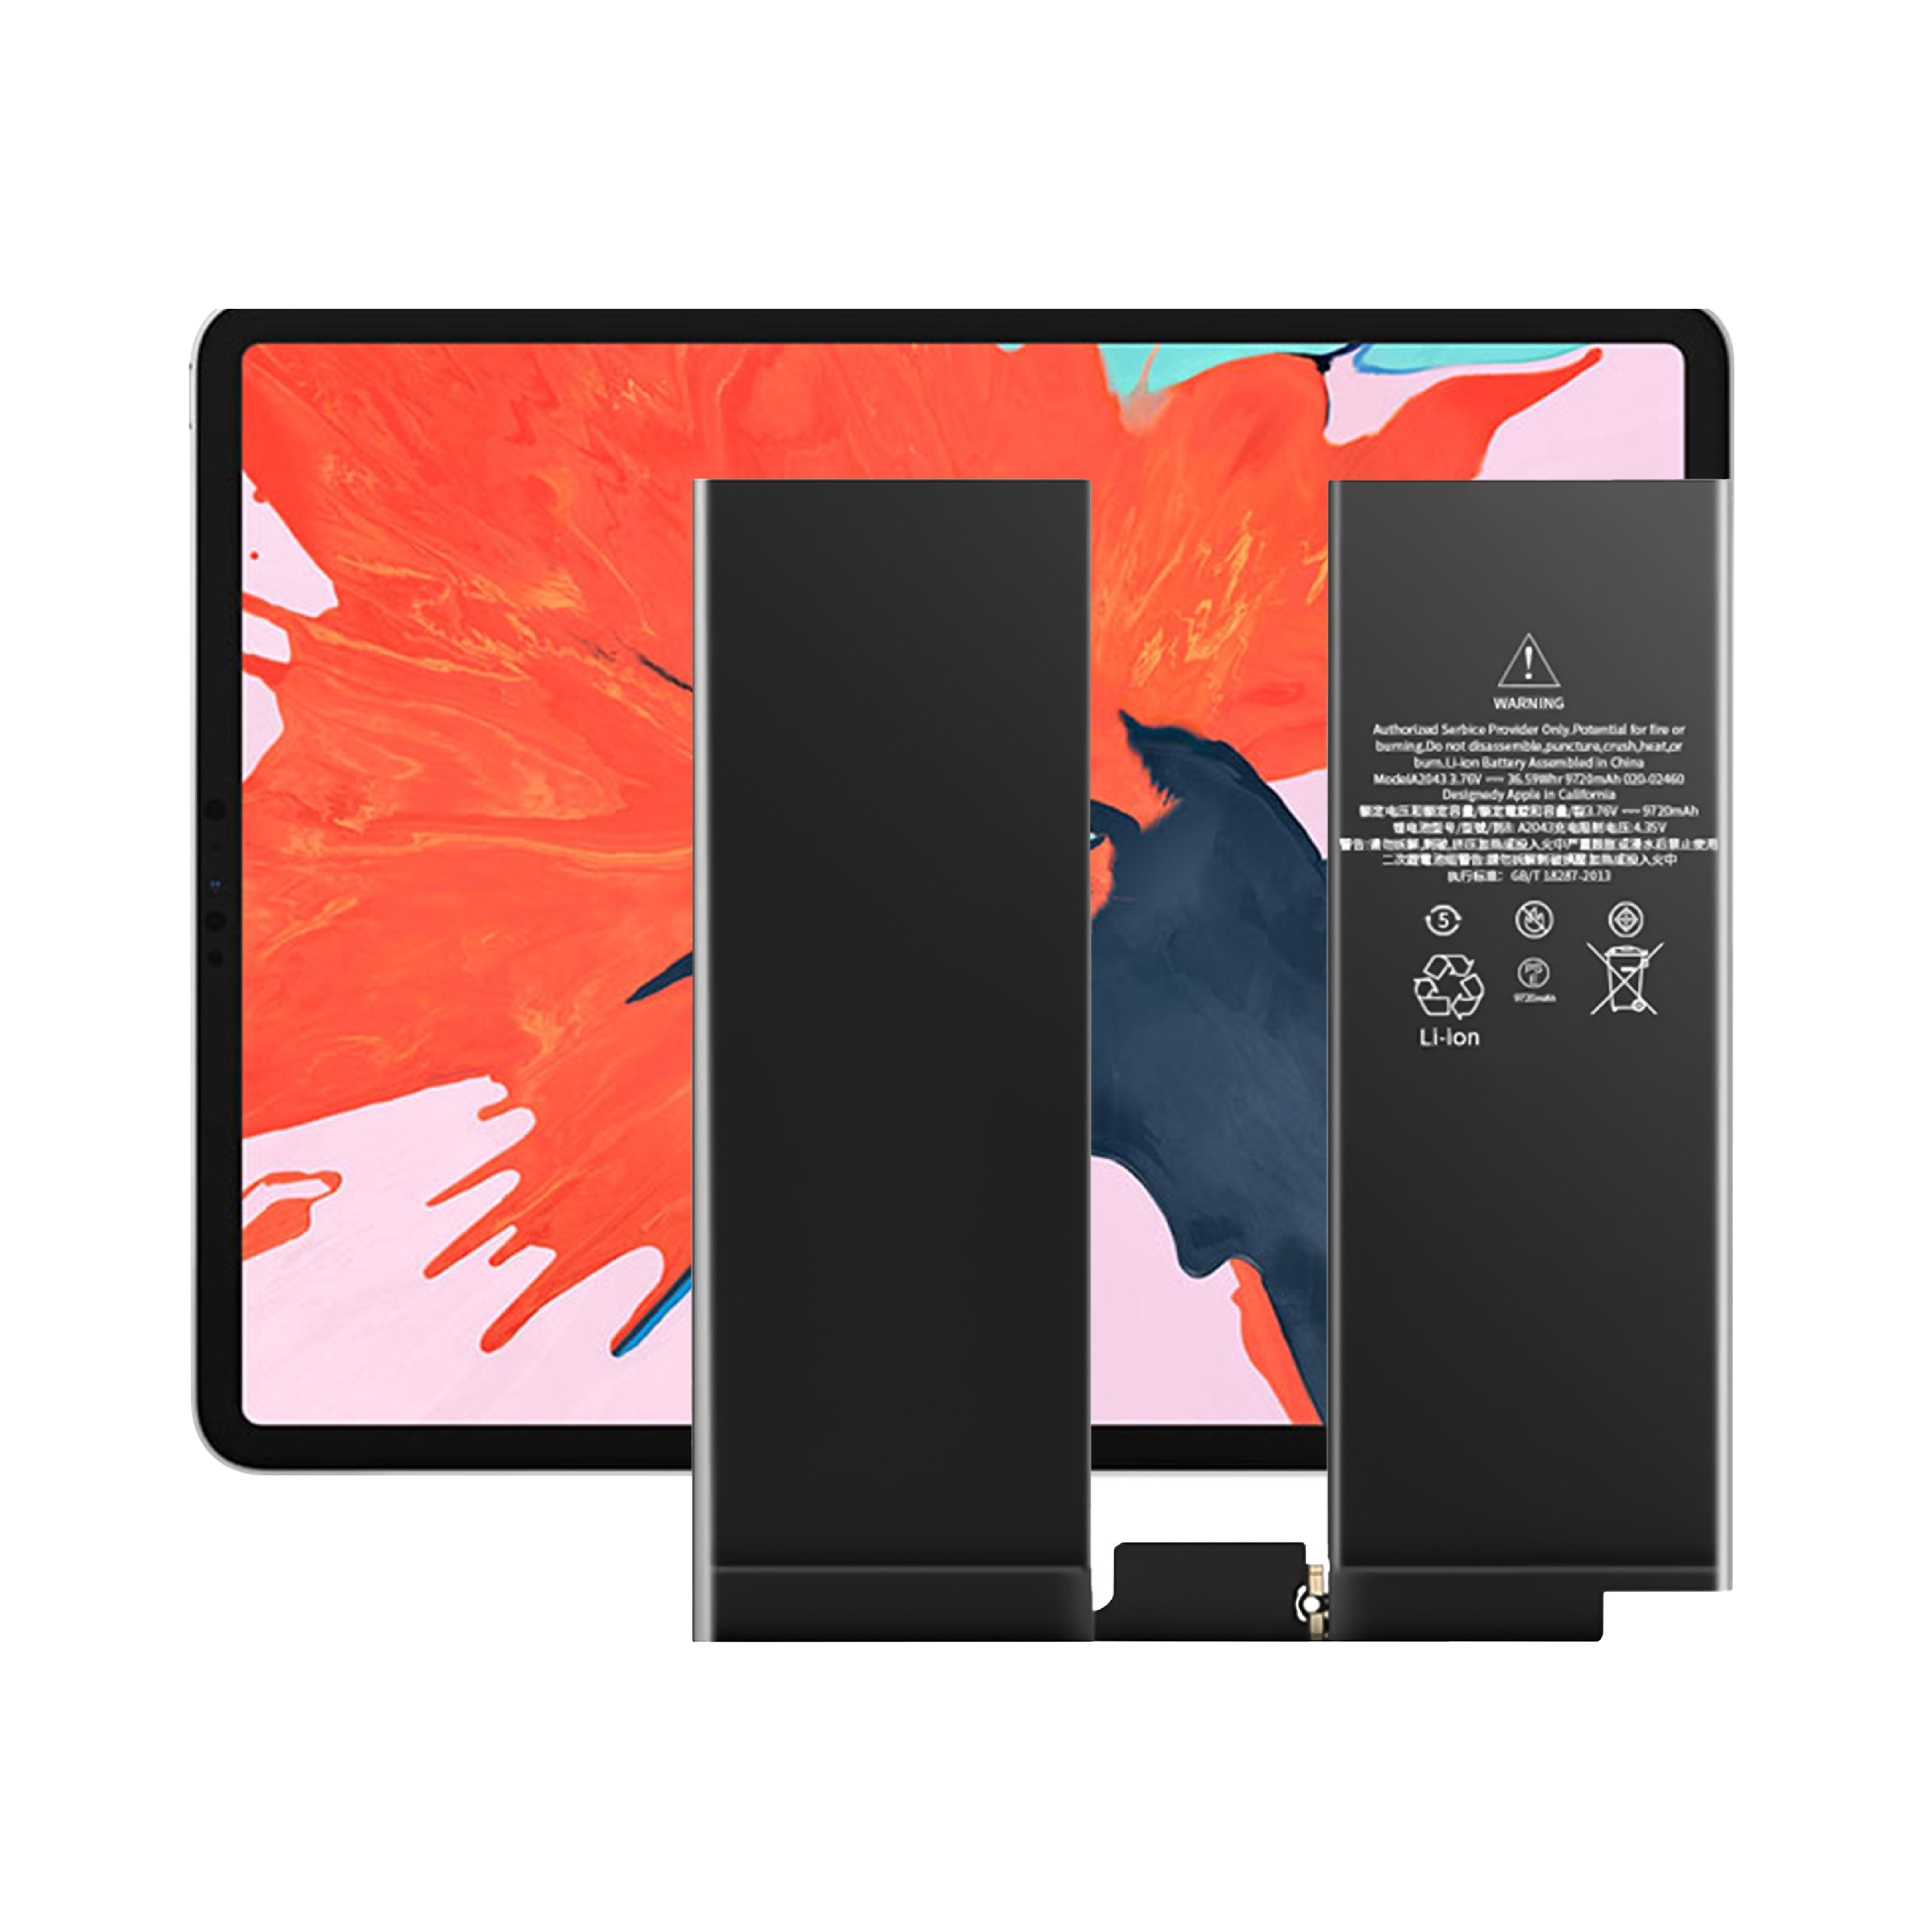 Wysokiej jakości fabrycznie nowa, wewnętrzna bateria tabletu o cyklu 0 do baterii Apple iPad Pro 12.9 3. generacji 4. generacji